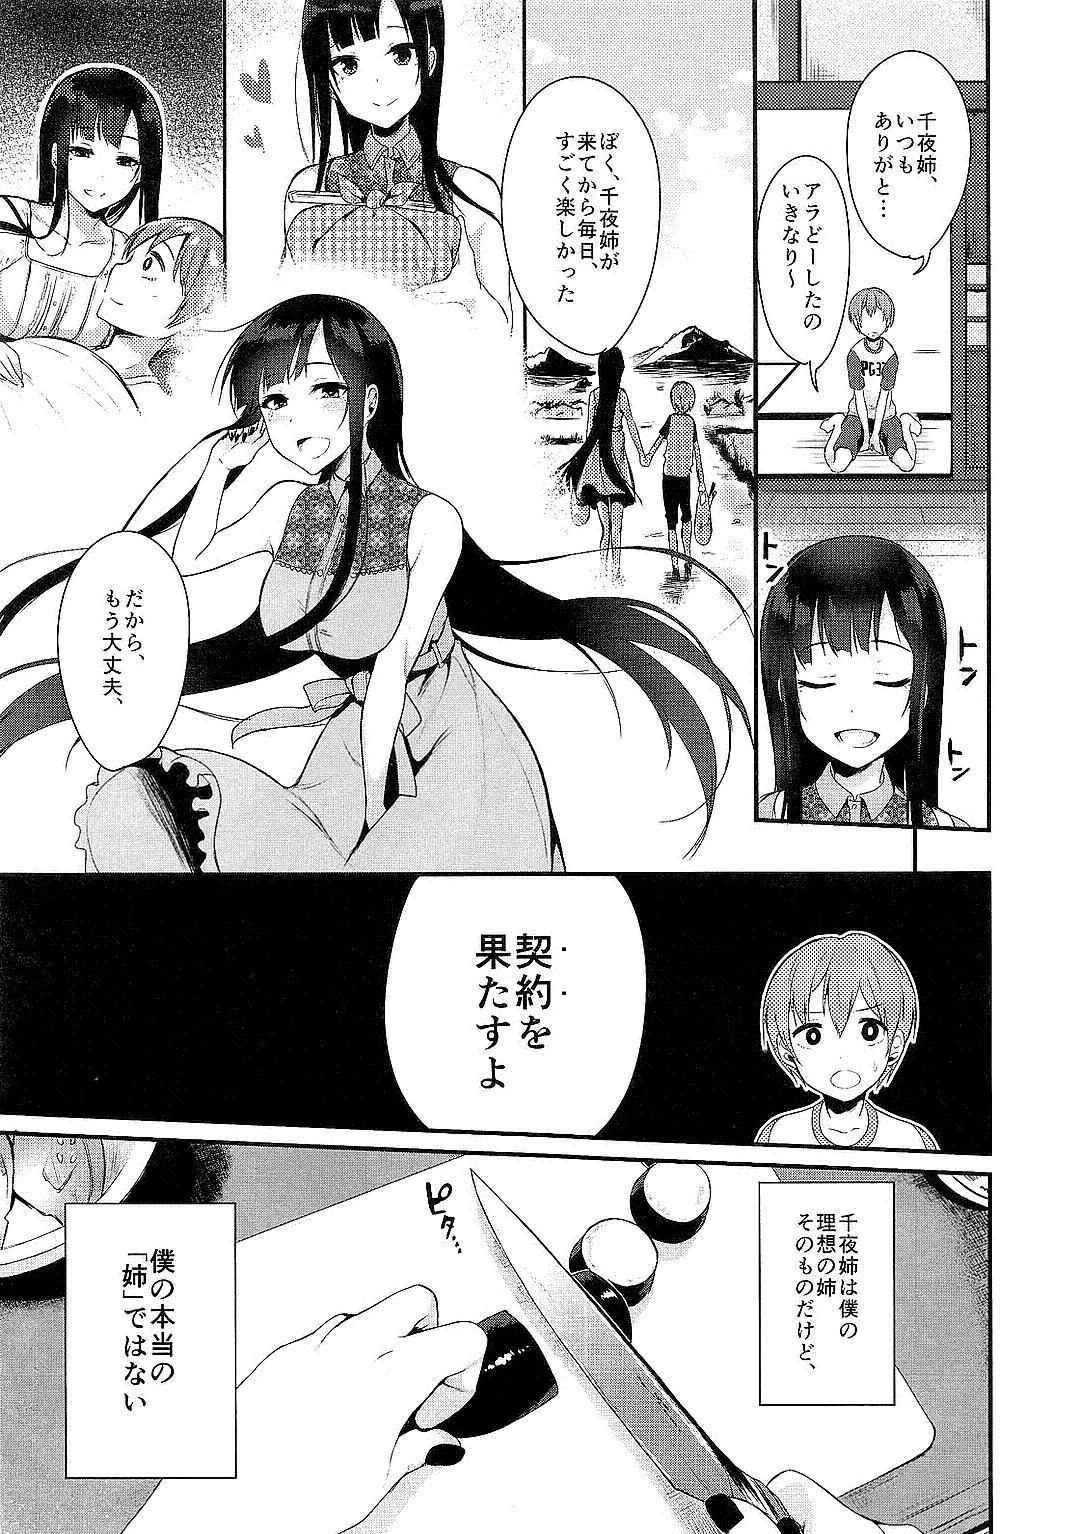 Sis Ane Naru Mono Zenshuu 1 - Ane naru mono Teenies - Page 9